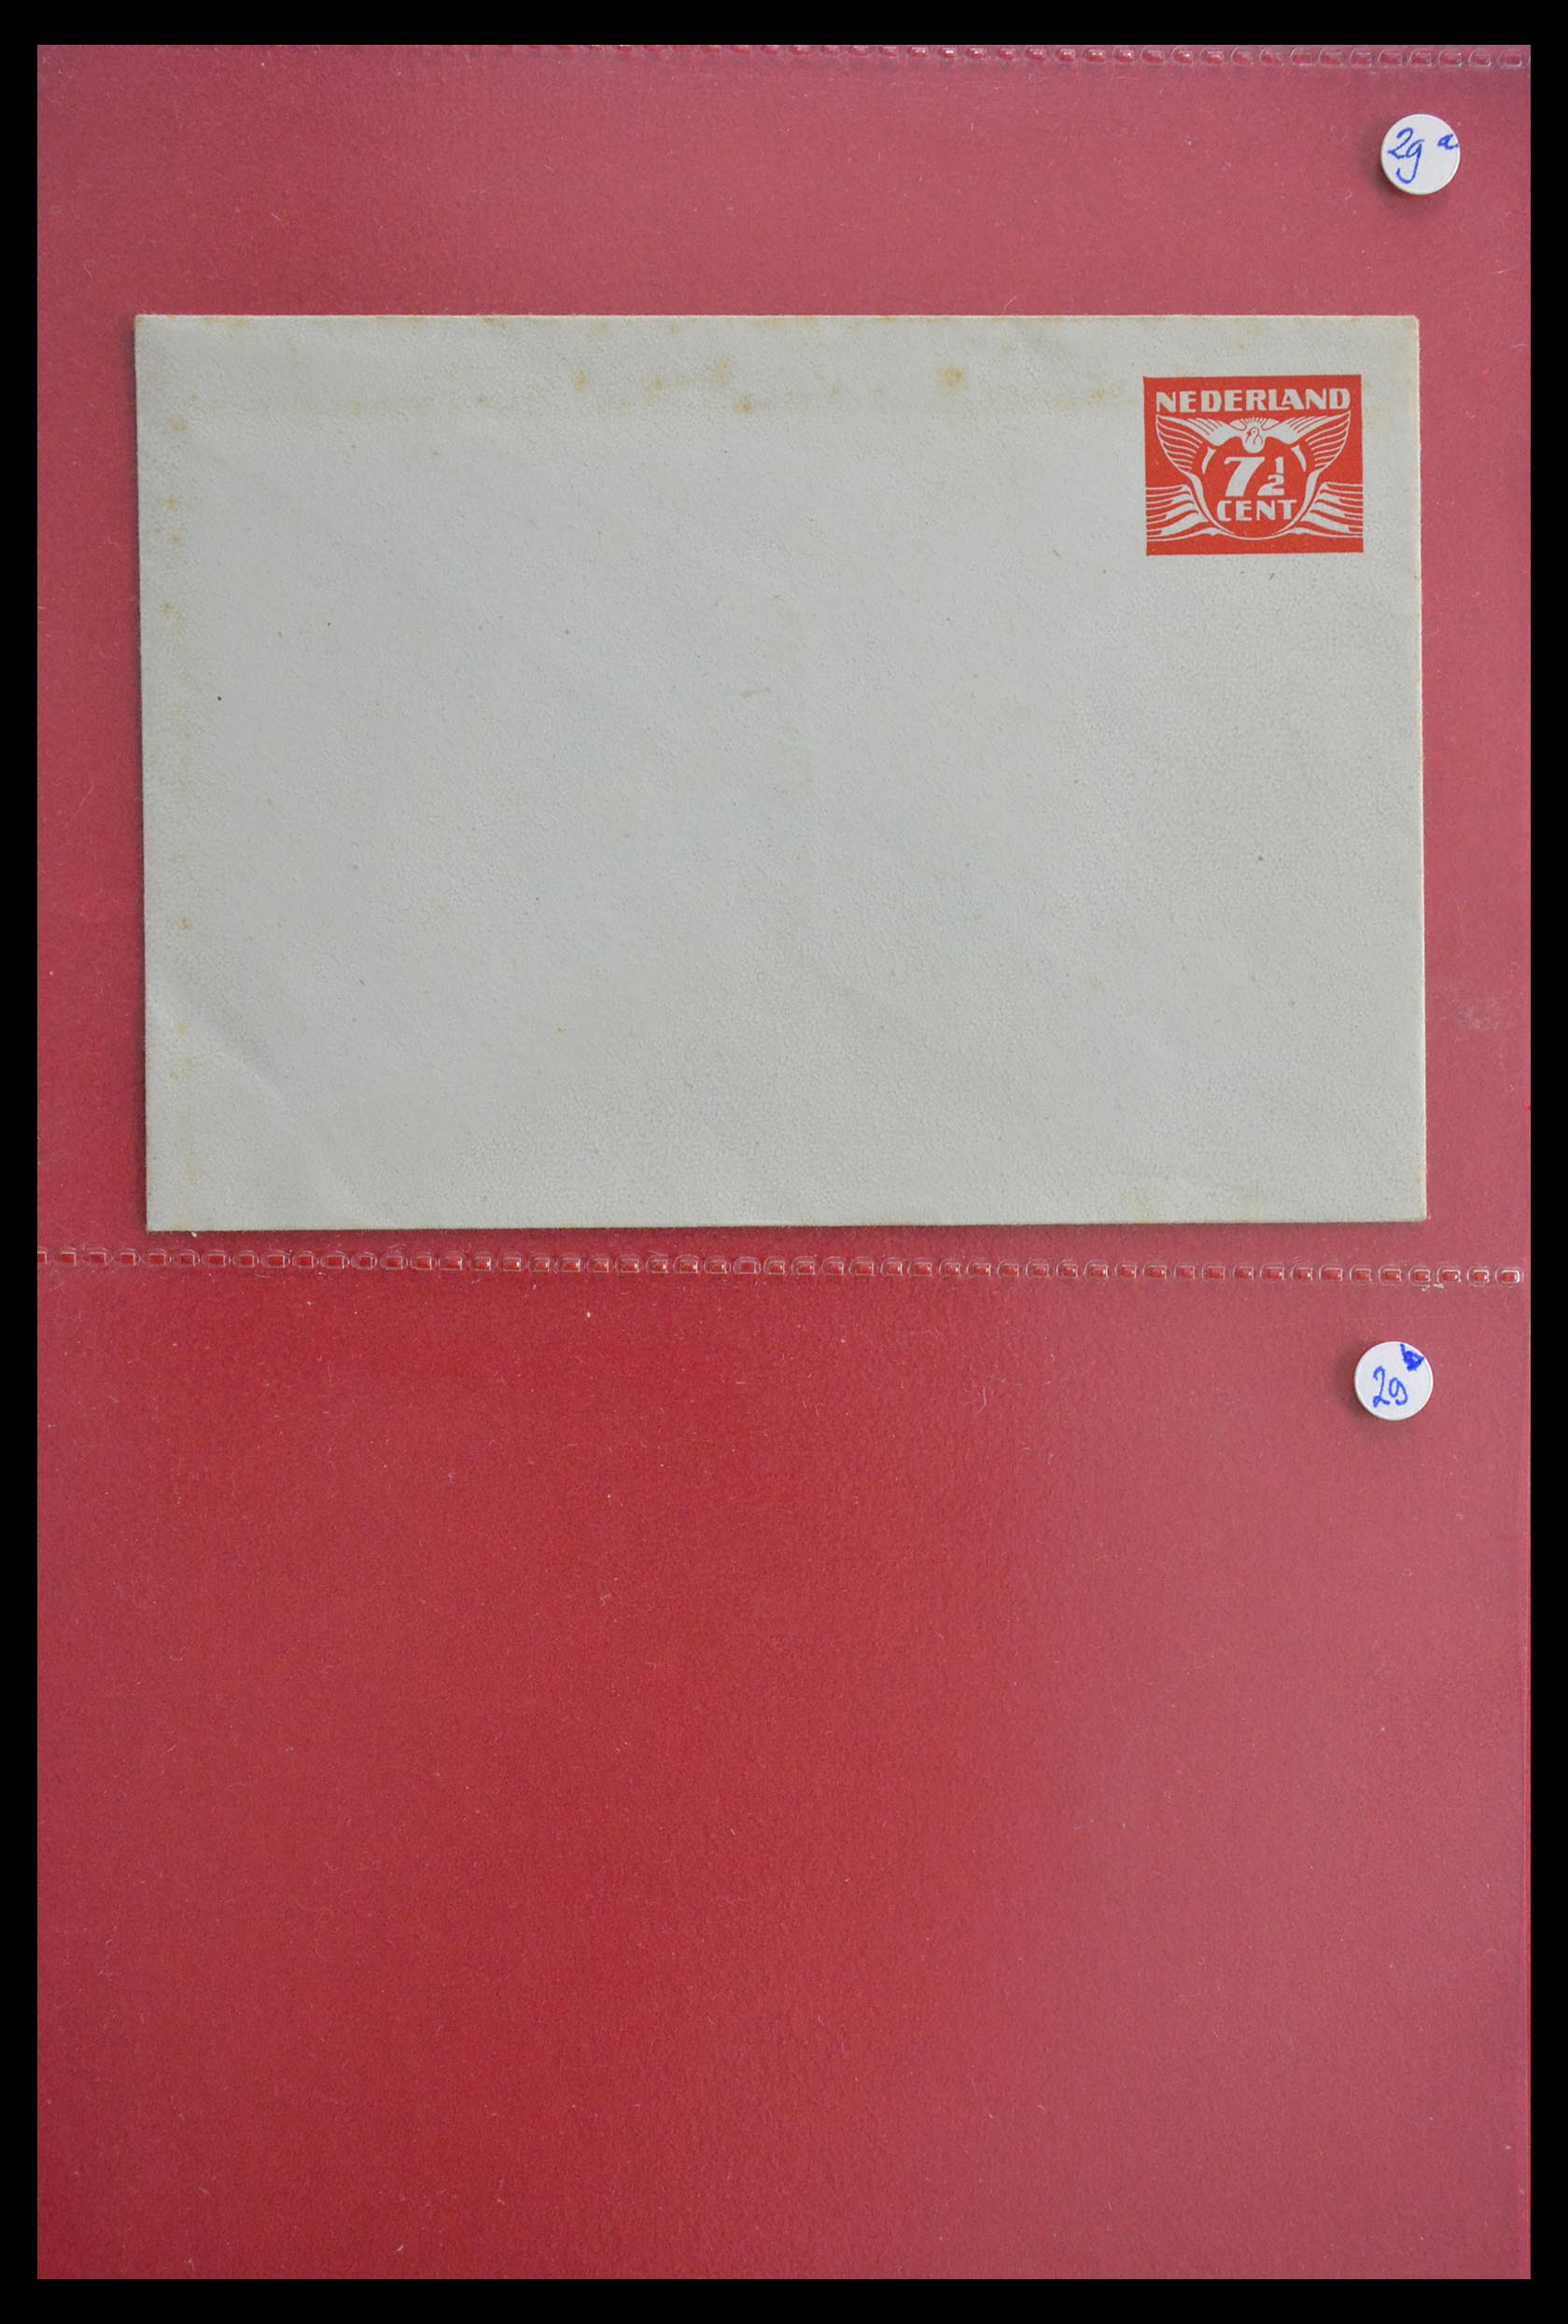 28895 002 - 28895 Netherlands postal stationeries.